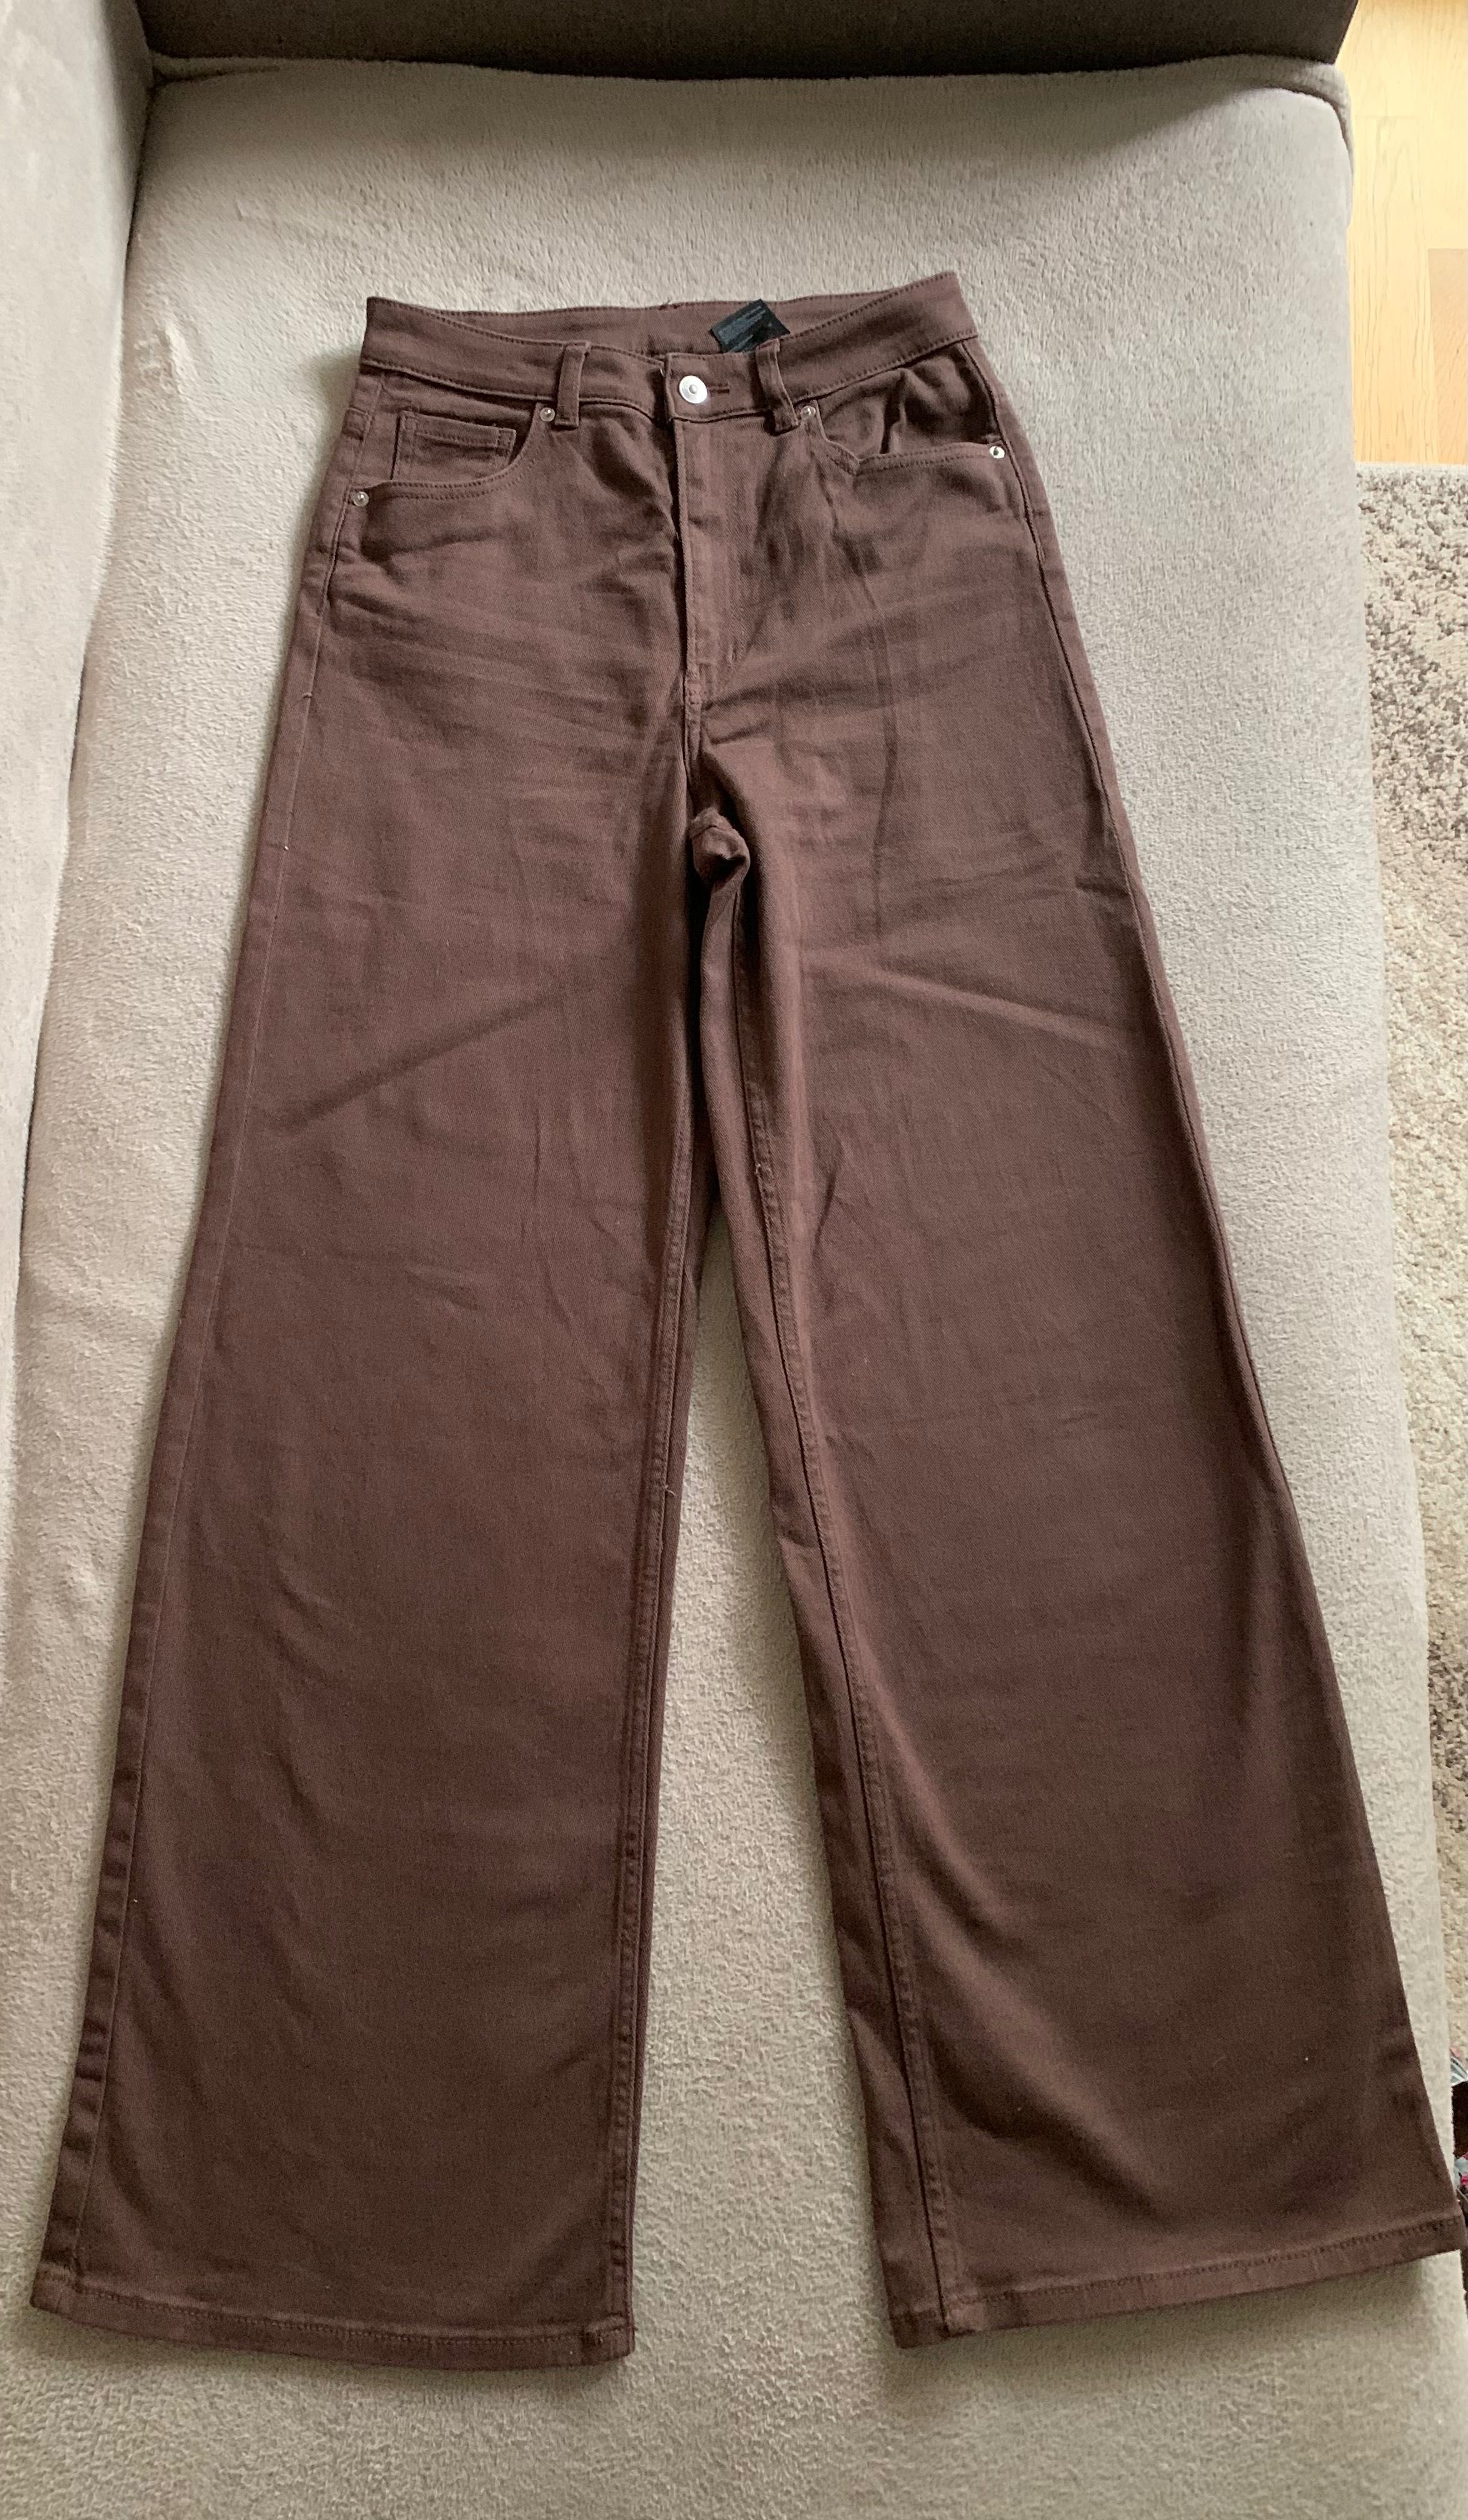 Spodnie H&M rozm. 38/ M, nowe, szeroka nogawka